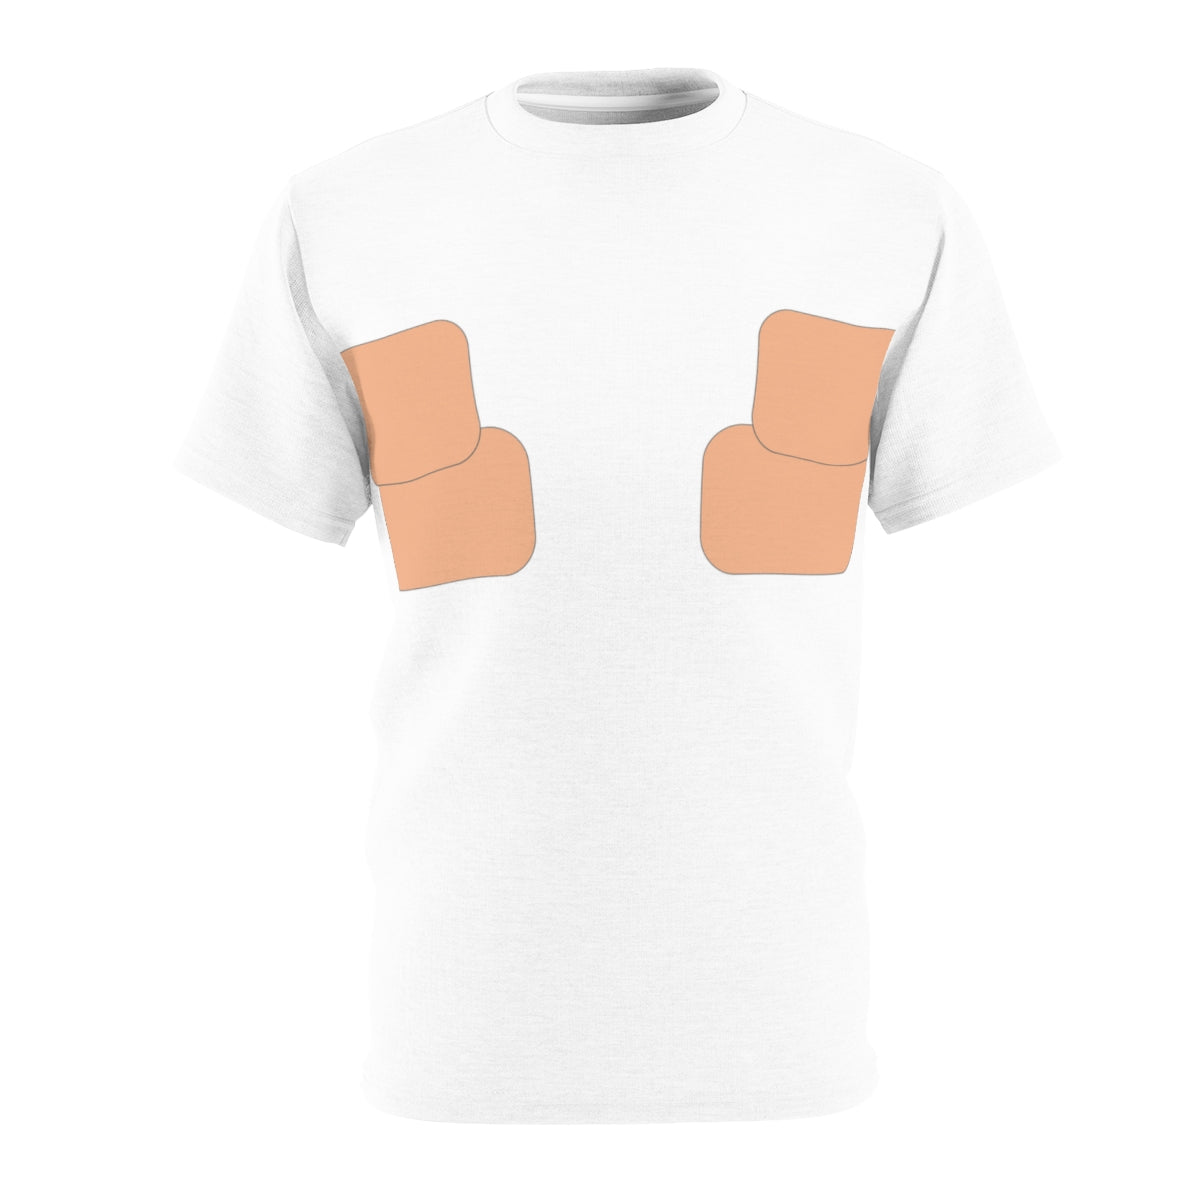 Normalizar la camiseta con cinta en el pecho | Tono de piel 002 - 2 tiras 